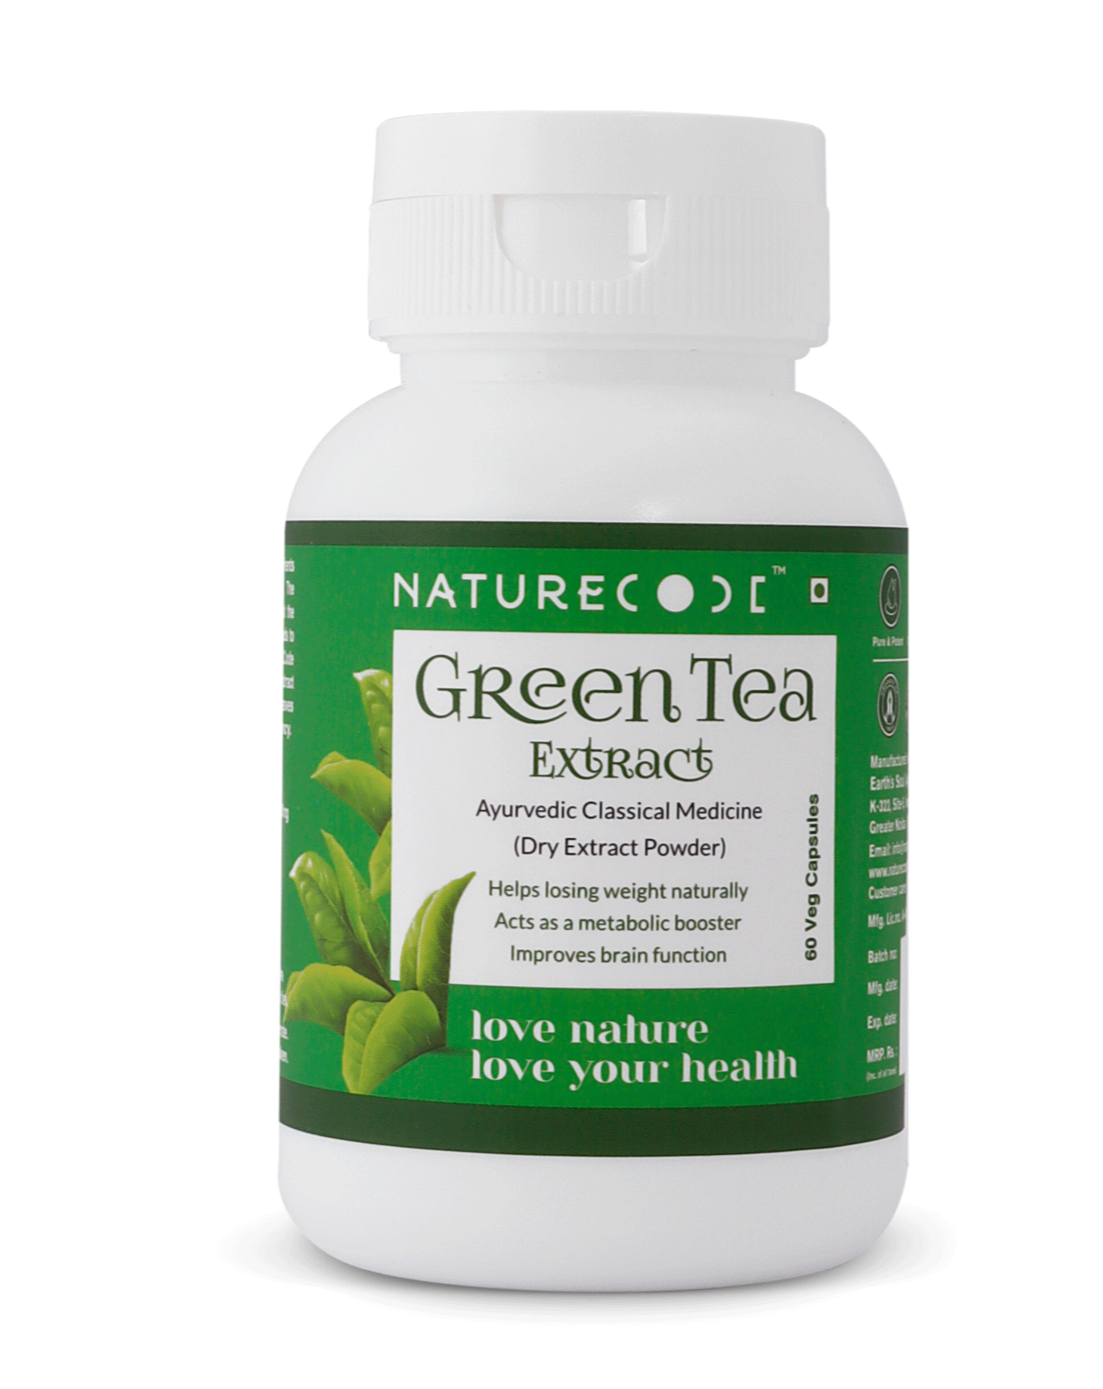 Green Tea Naturecodeindia